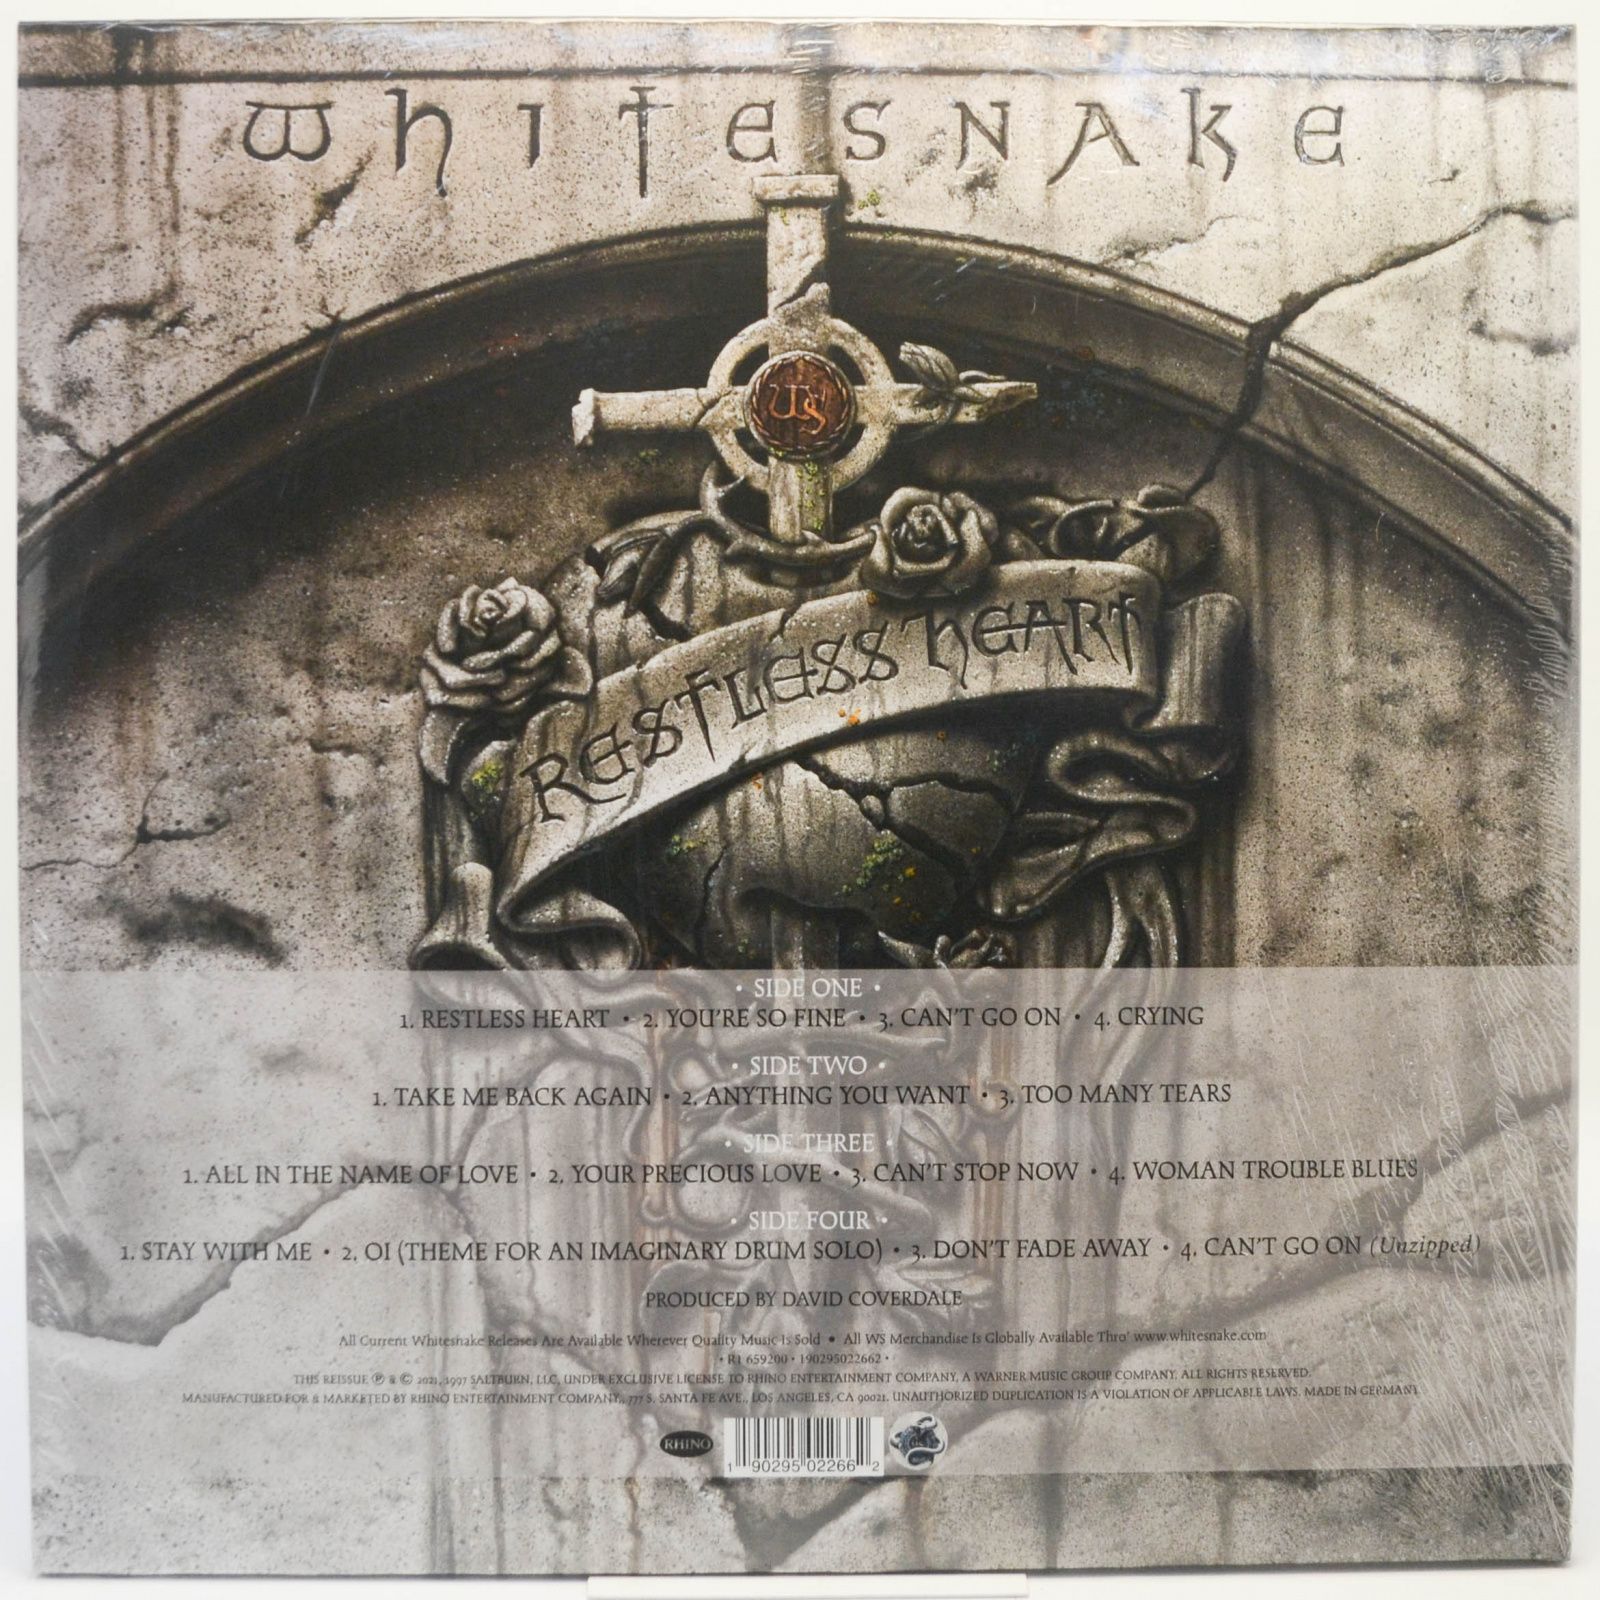 Whitesnake — Restless Heart (2LP), 1997